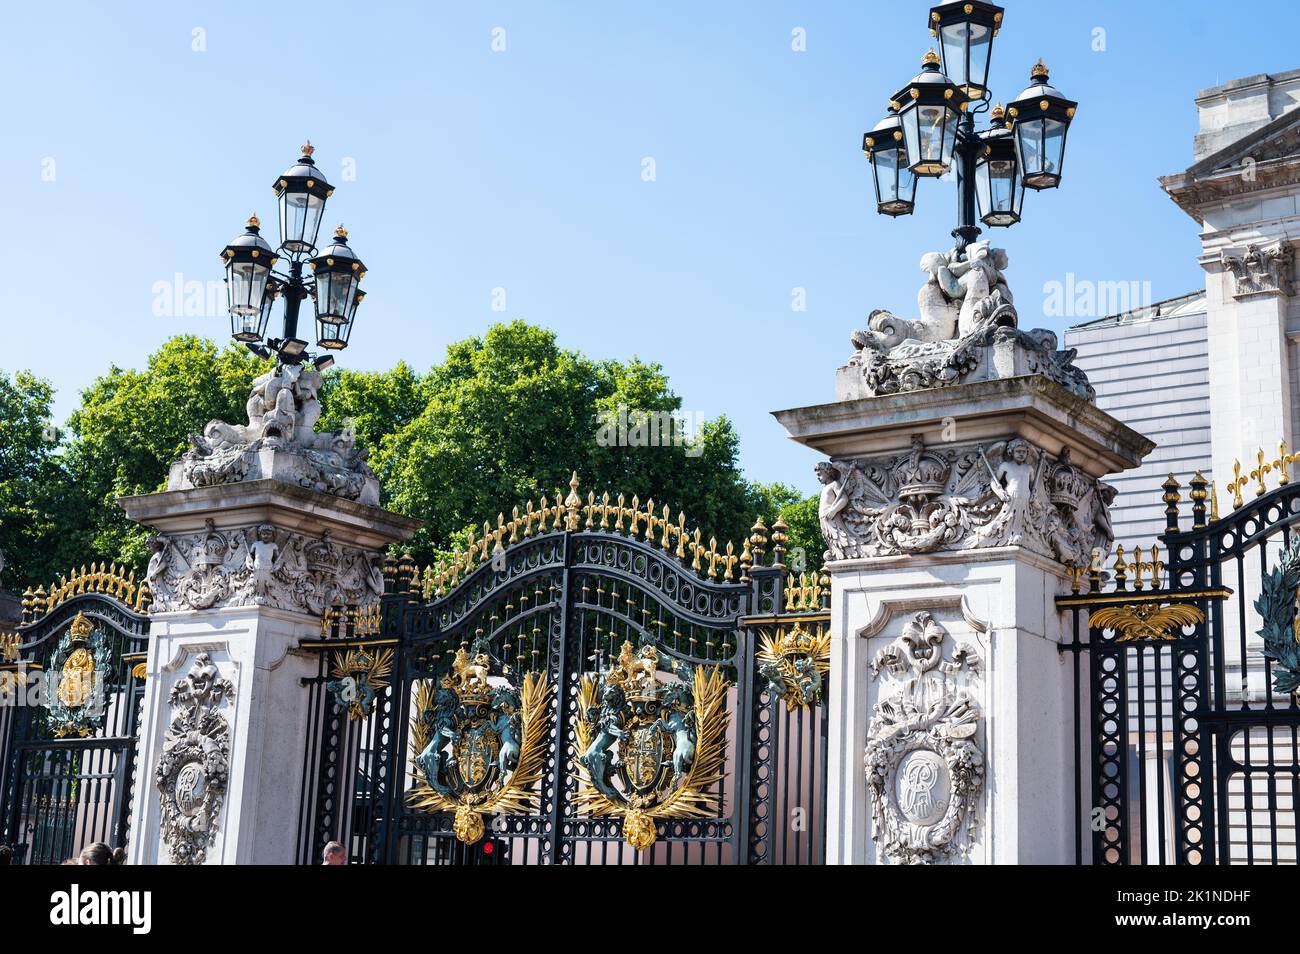 Gates close up showing British Royal Coat of Arms, Buckingham palace Stock Photo